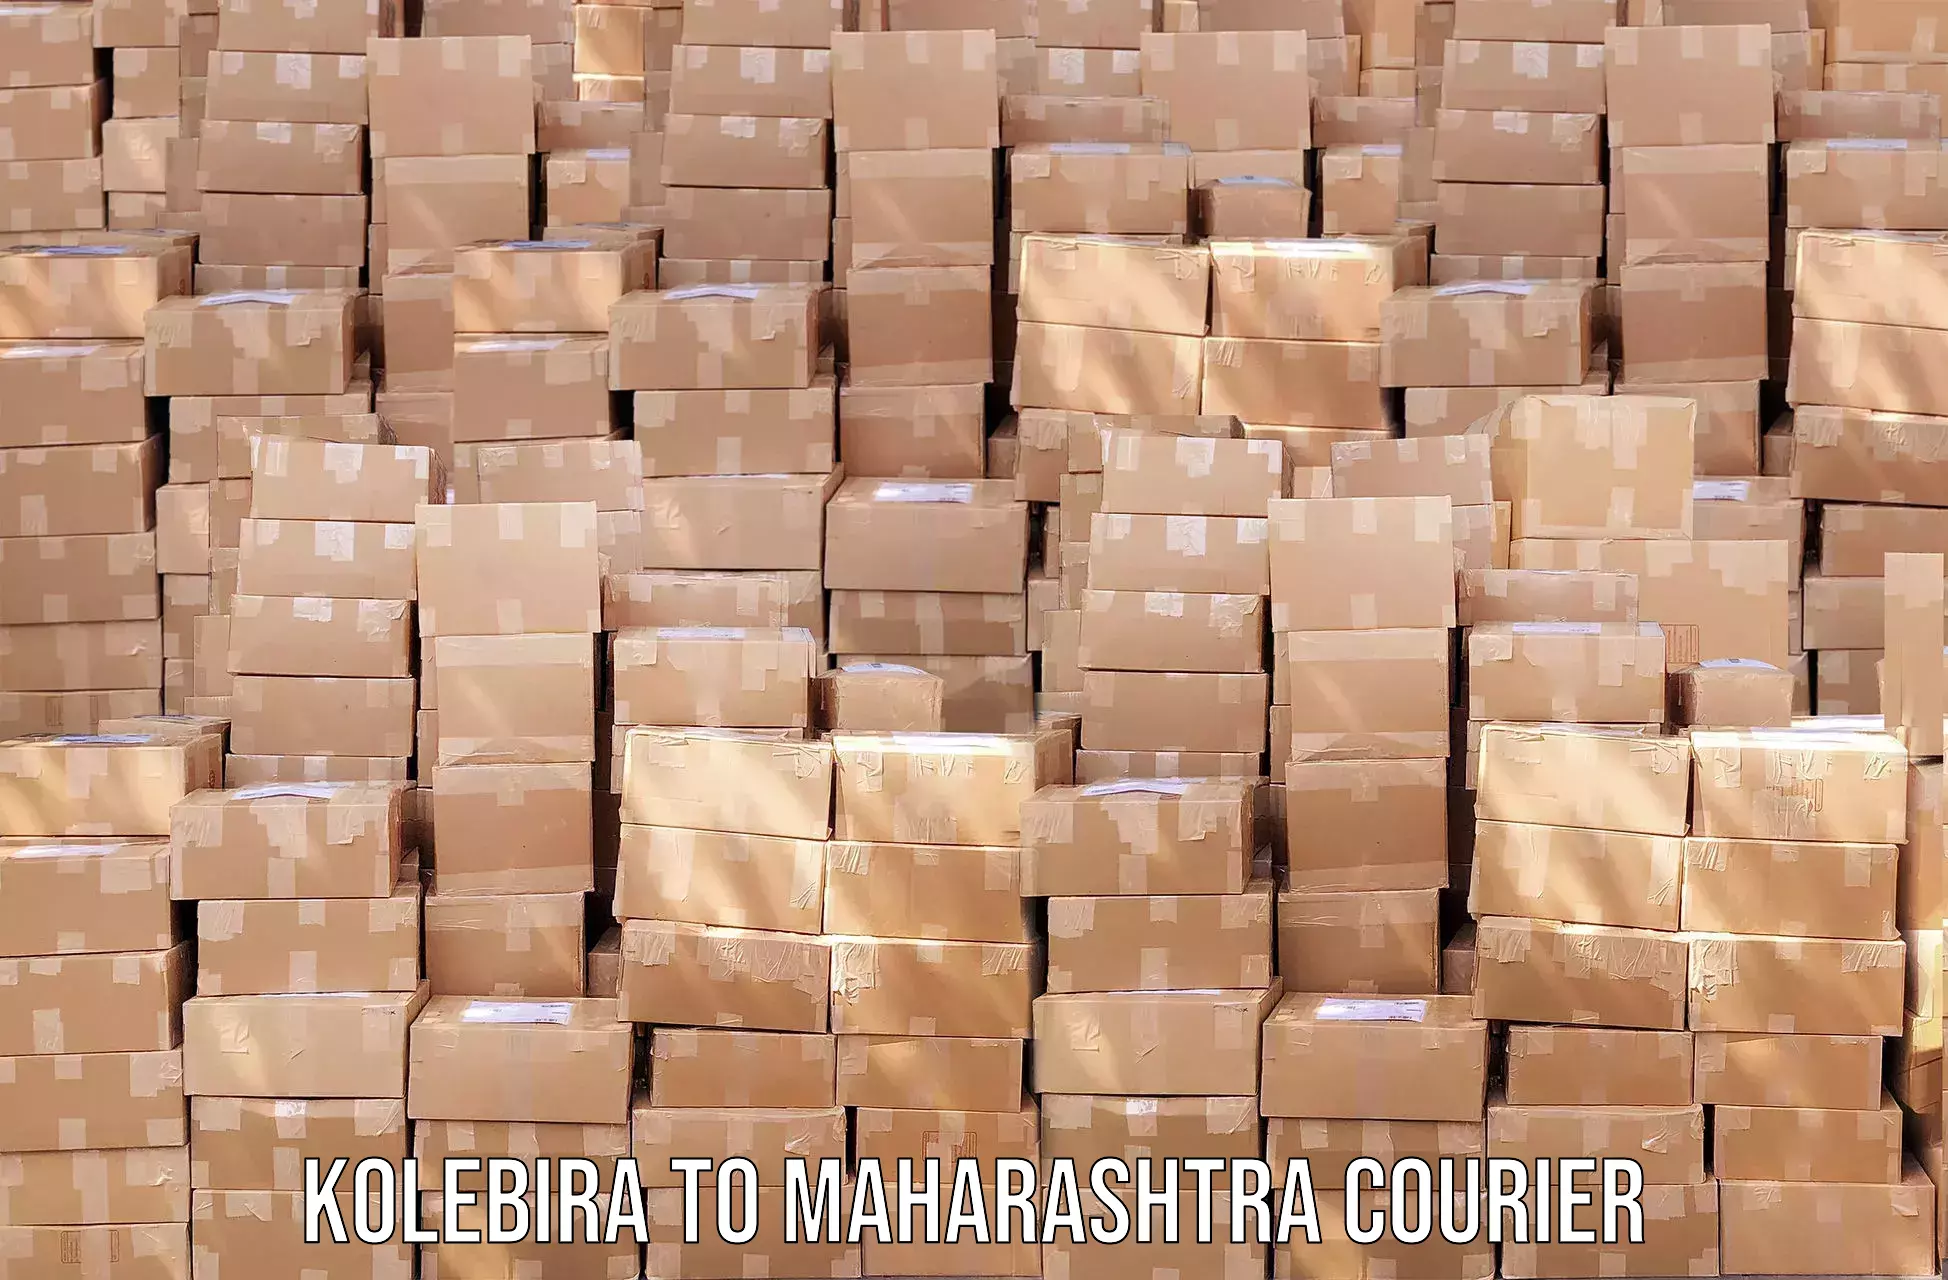 Customer-centric shipping Kolebira to Maharashtra